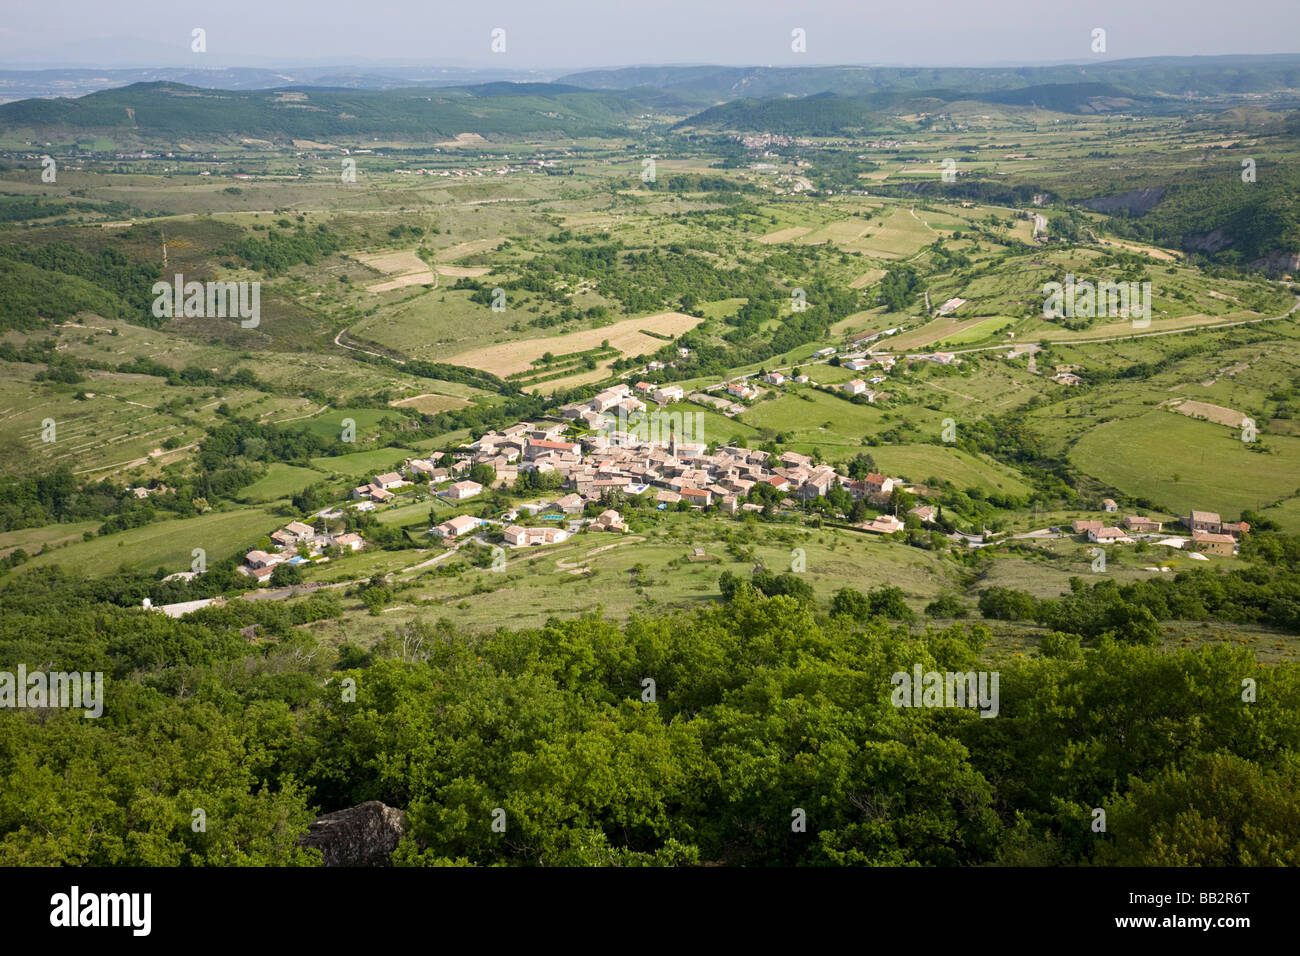 An aerial view of the village of Saint Pons (Ardeche - France). Vue aérienne du village de Saint Pons, en Ardèche (France). Stock Photo